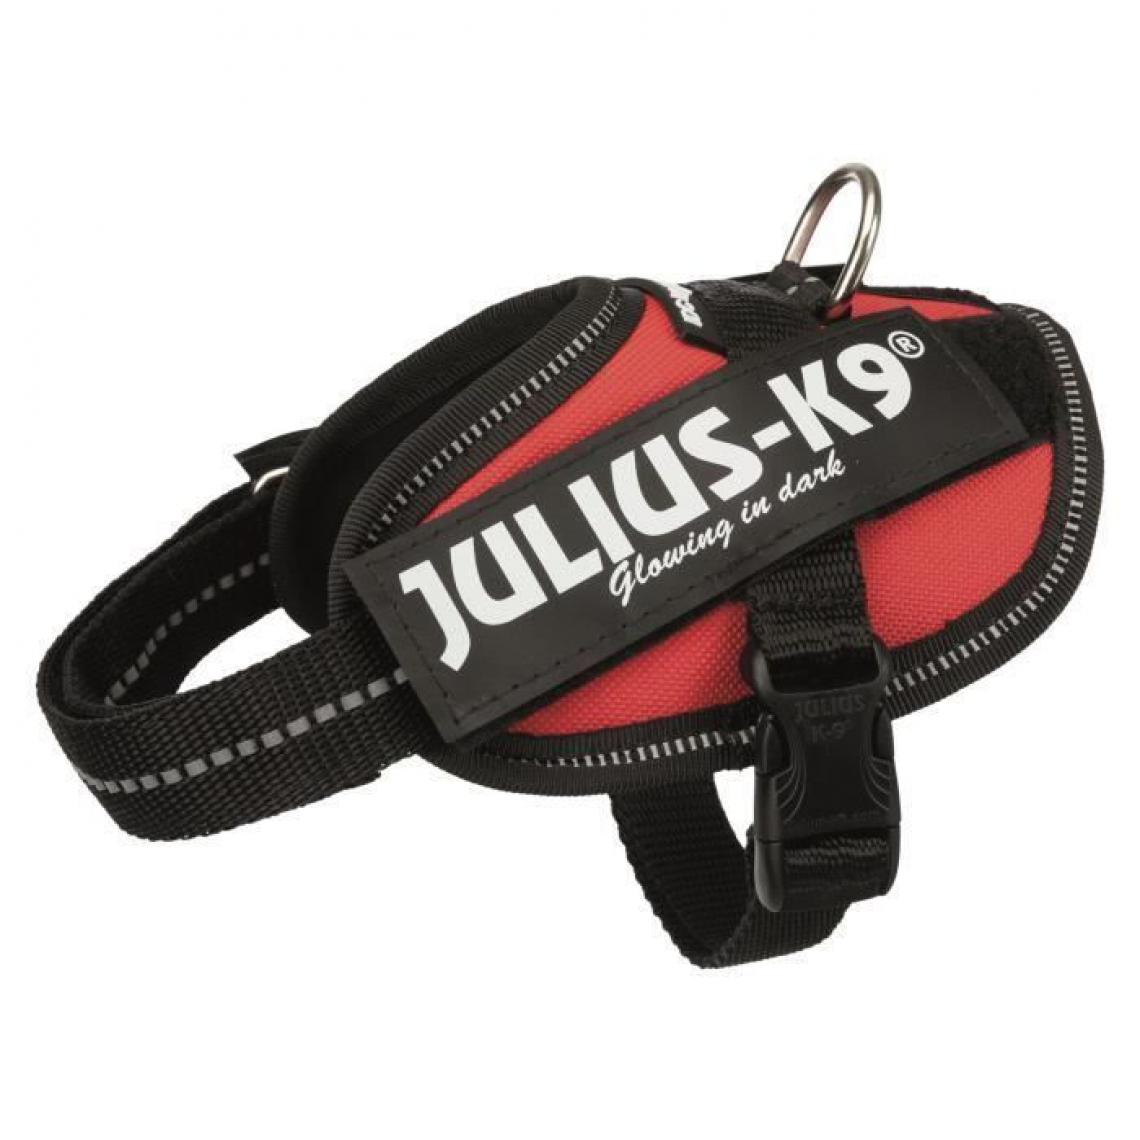 Julius K9 - JULIUS K9 Harnais Power IDC Baby 2-XS-S : 33-45 cm - 18 mm - Rouge - Pour chien - Equipement de transport pour chien